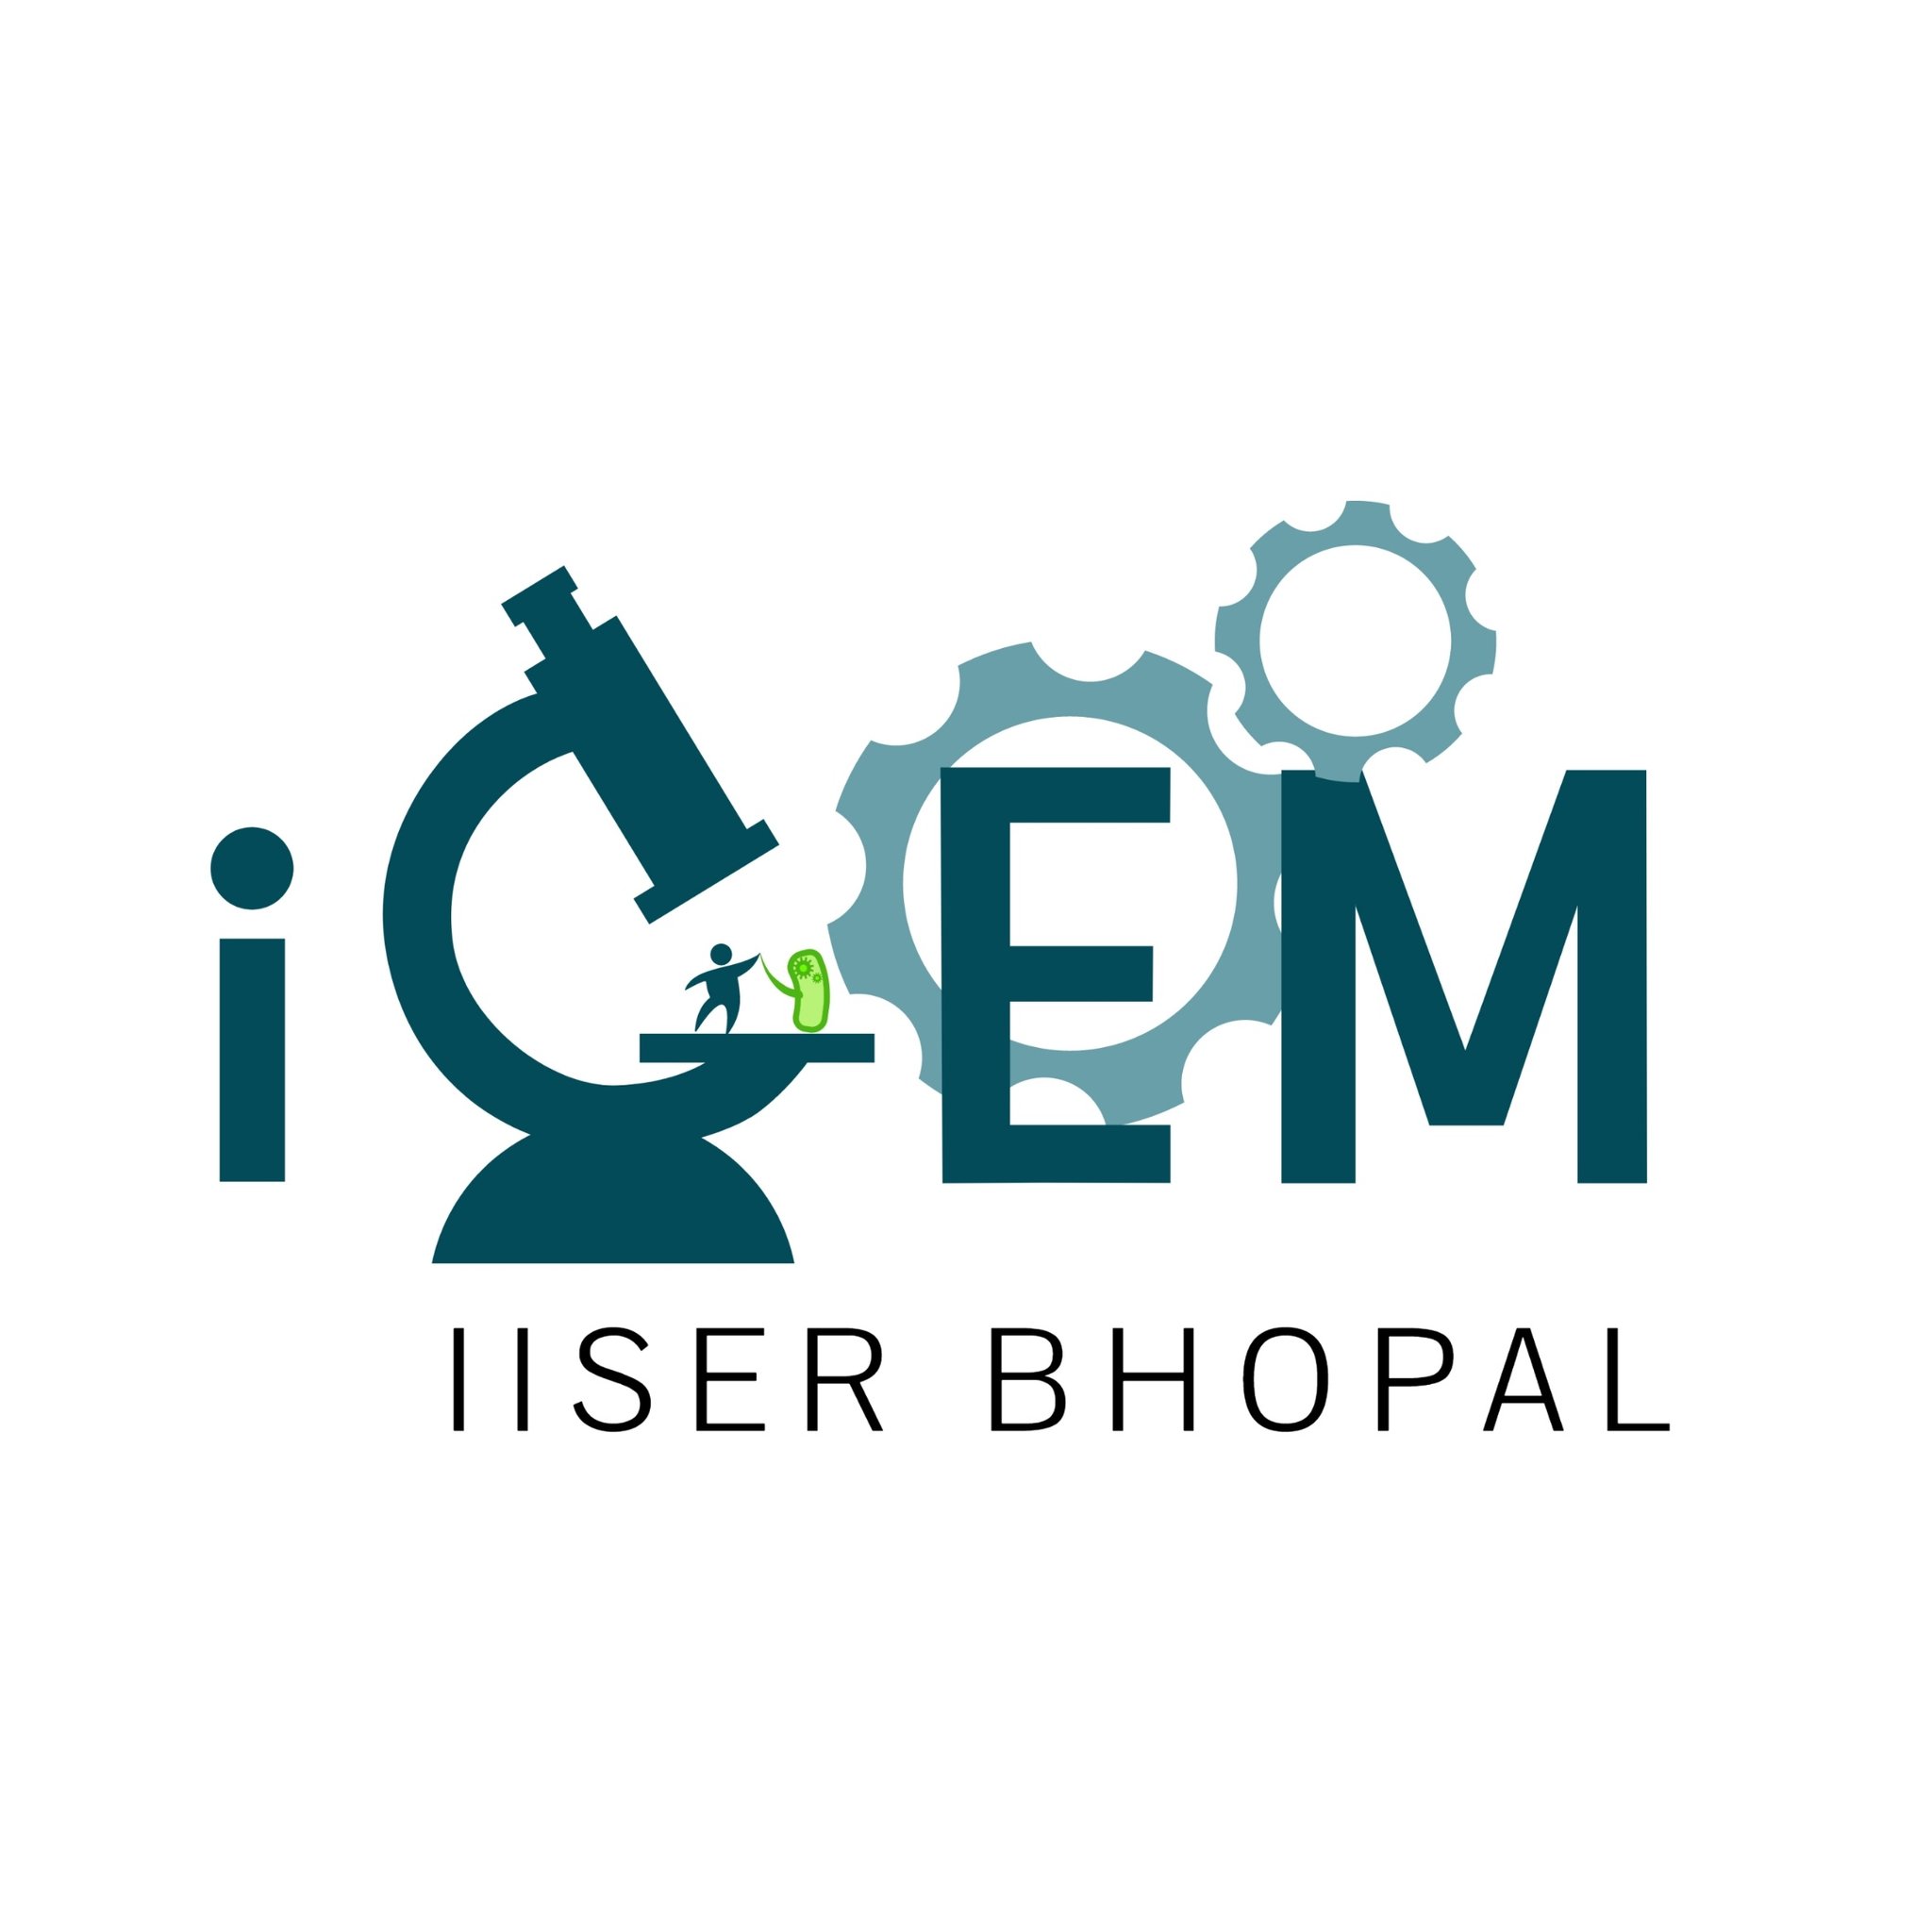 IISER Bhopal | LinkedIn